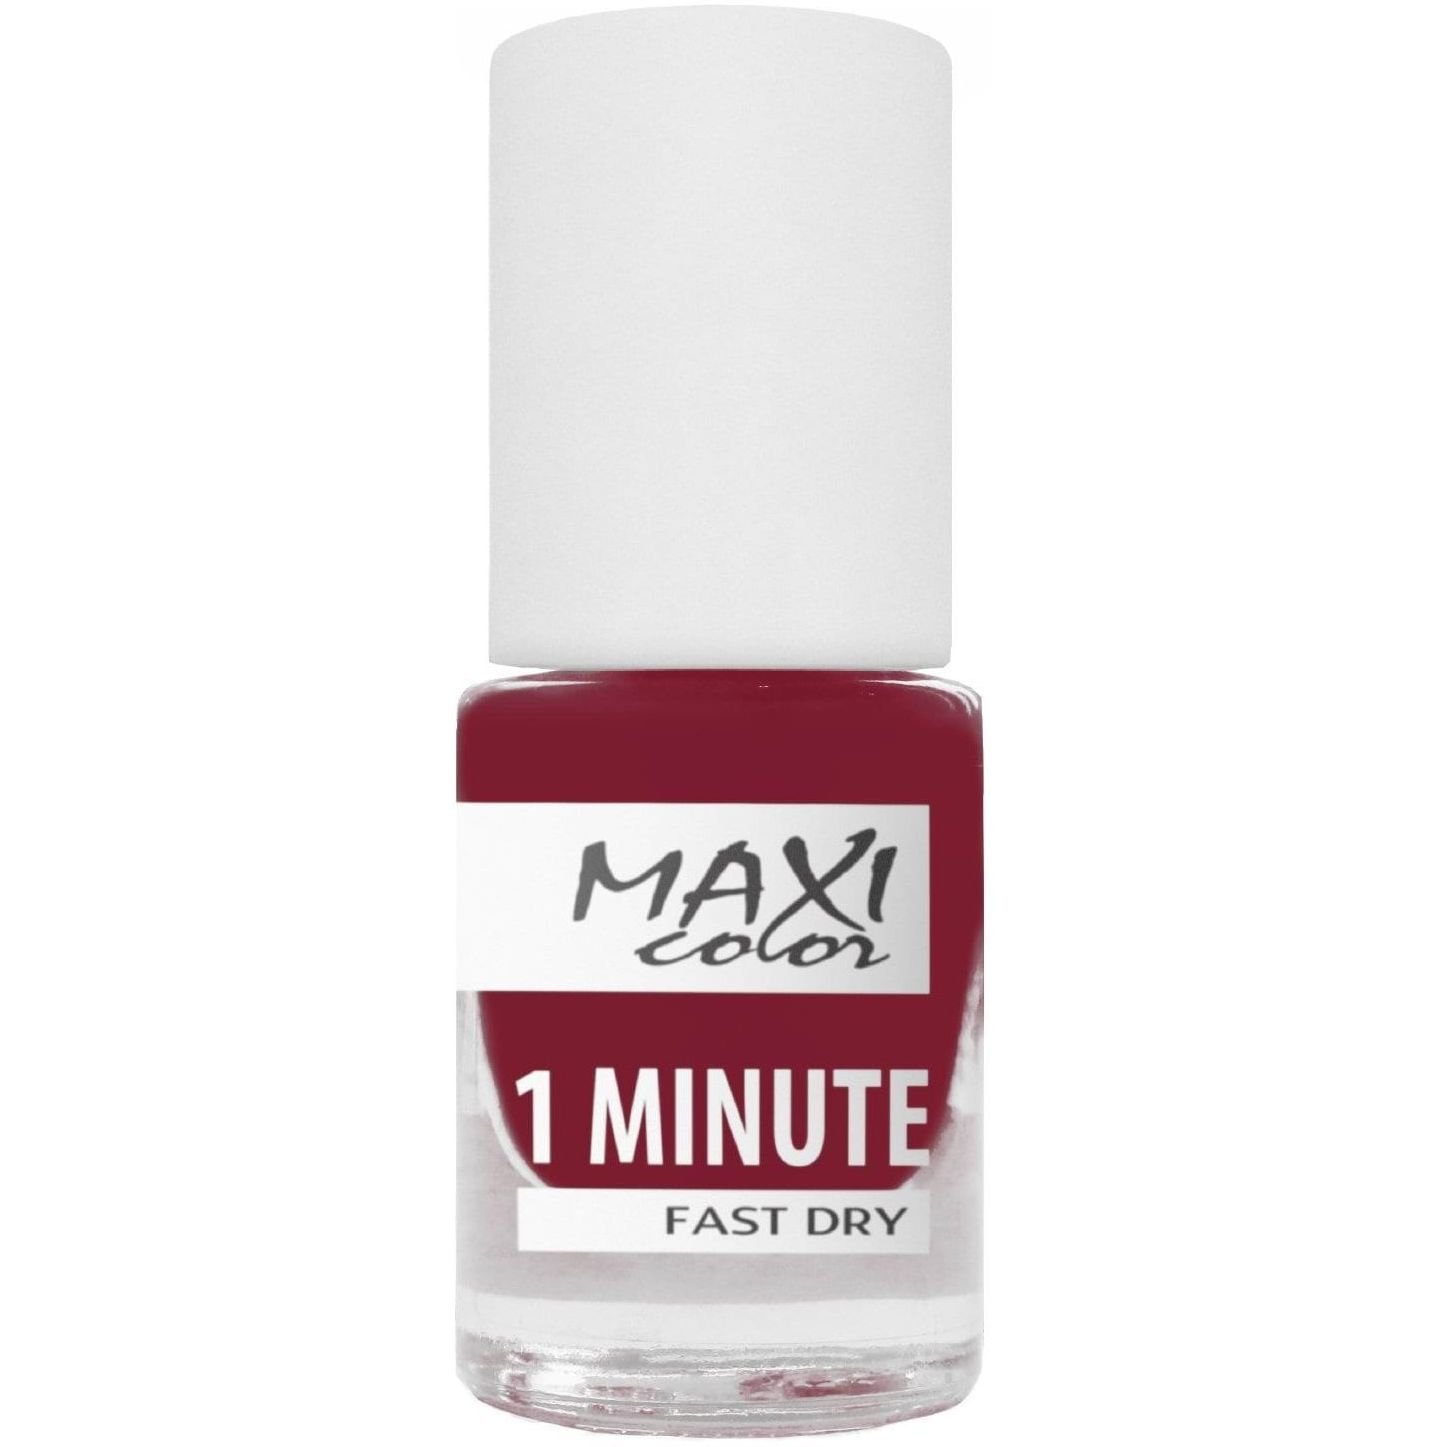 Лак для ногтей Maxi Color 1 Minute Fast Dry тон 035, 6 мл - фото 1